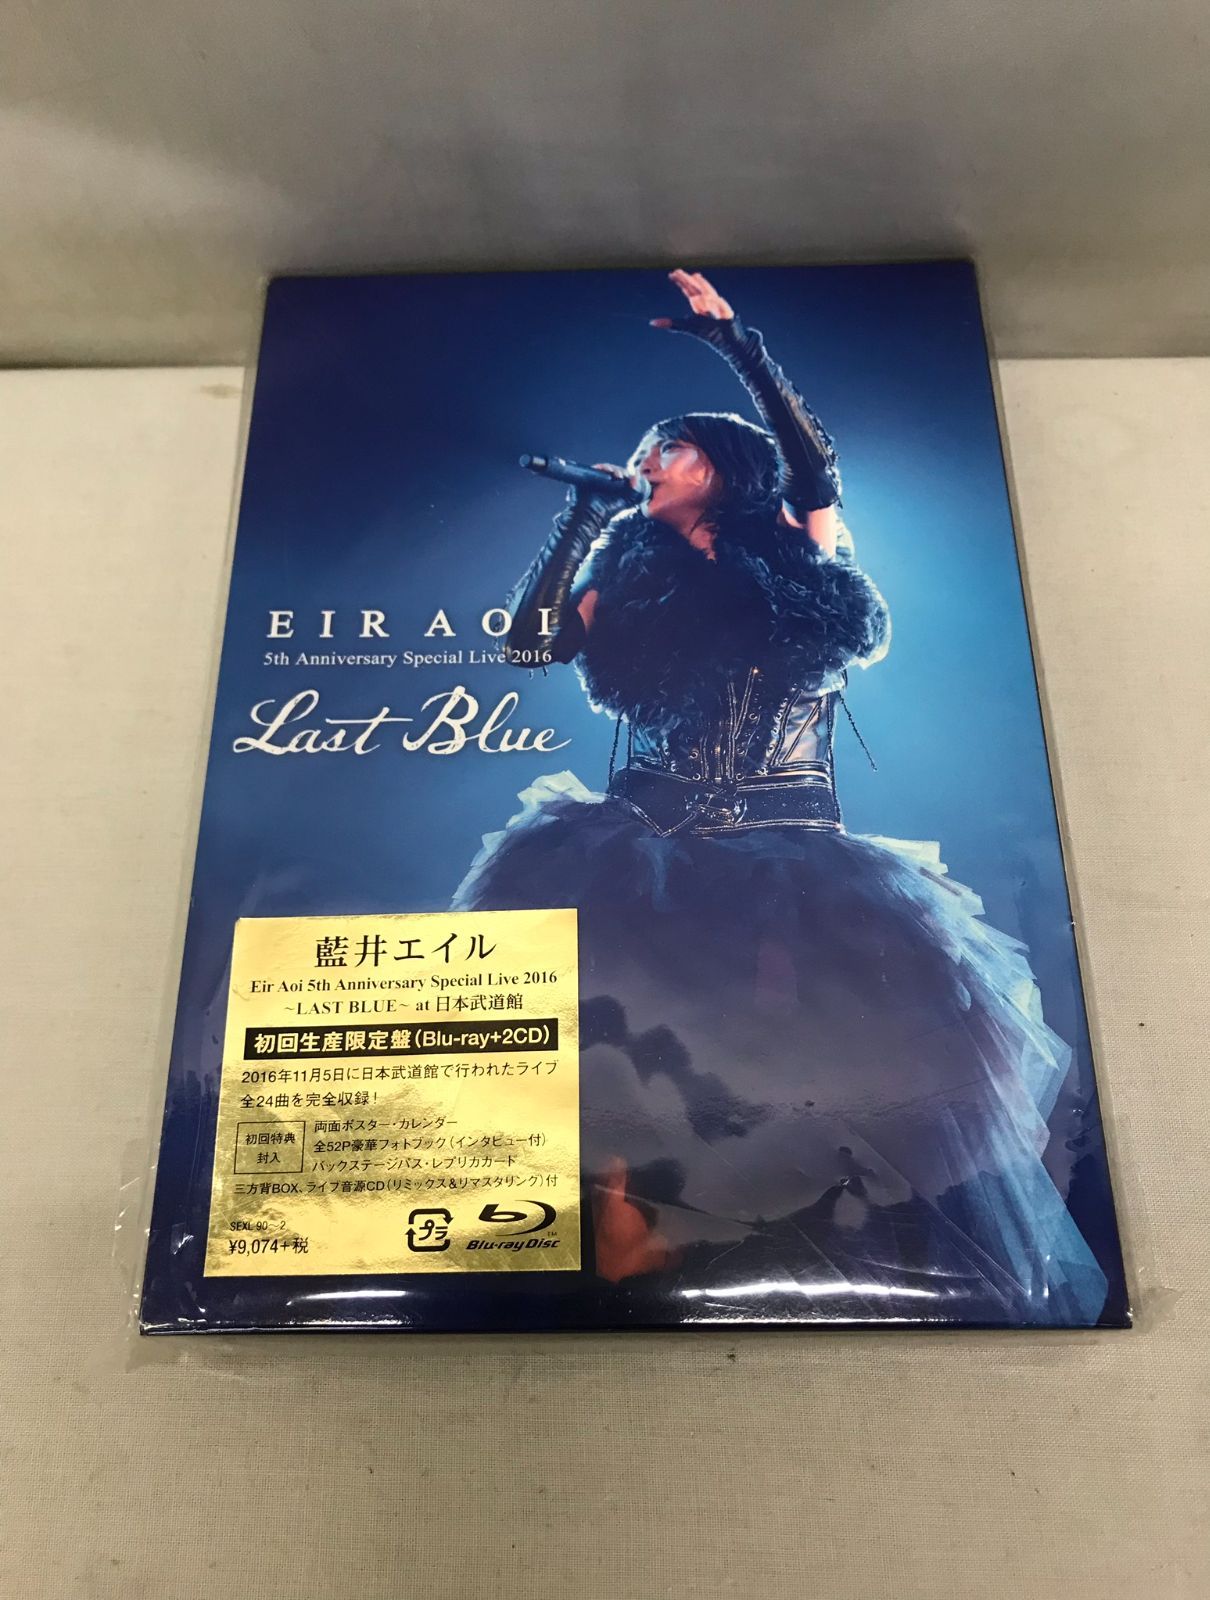 藍井エイル Eir Aoi 5th Live 2016 BD 限定盤